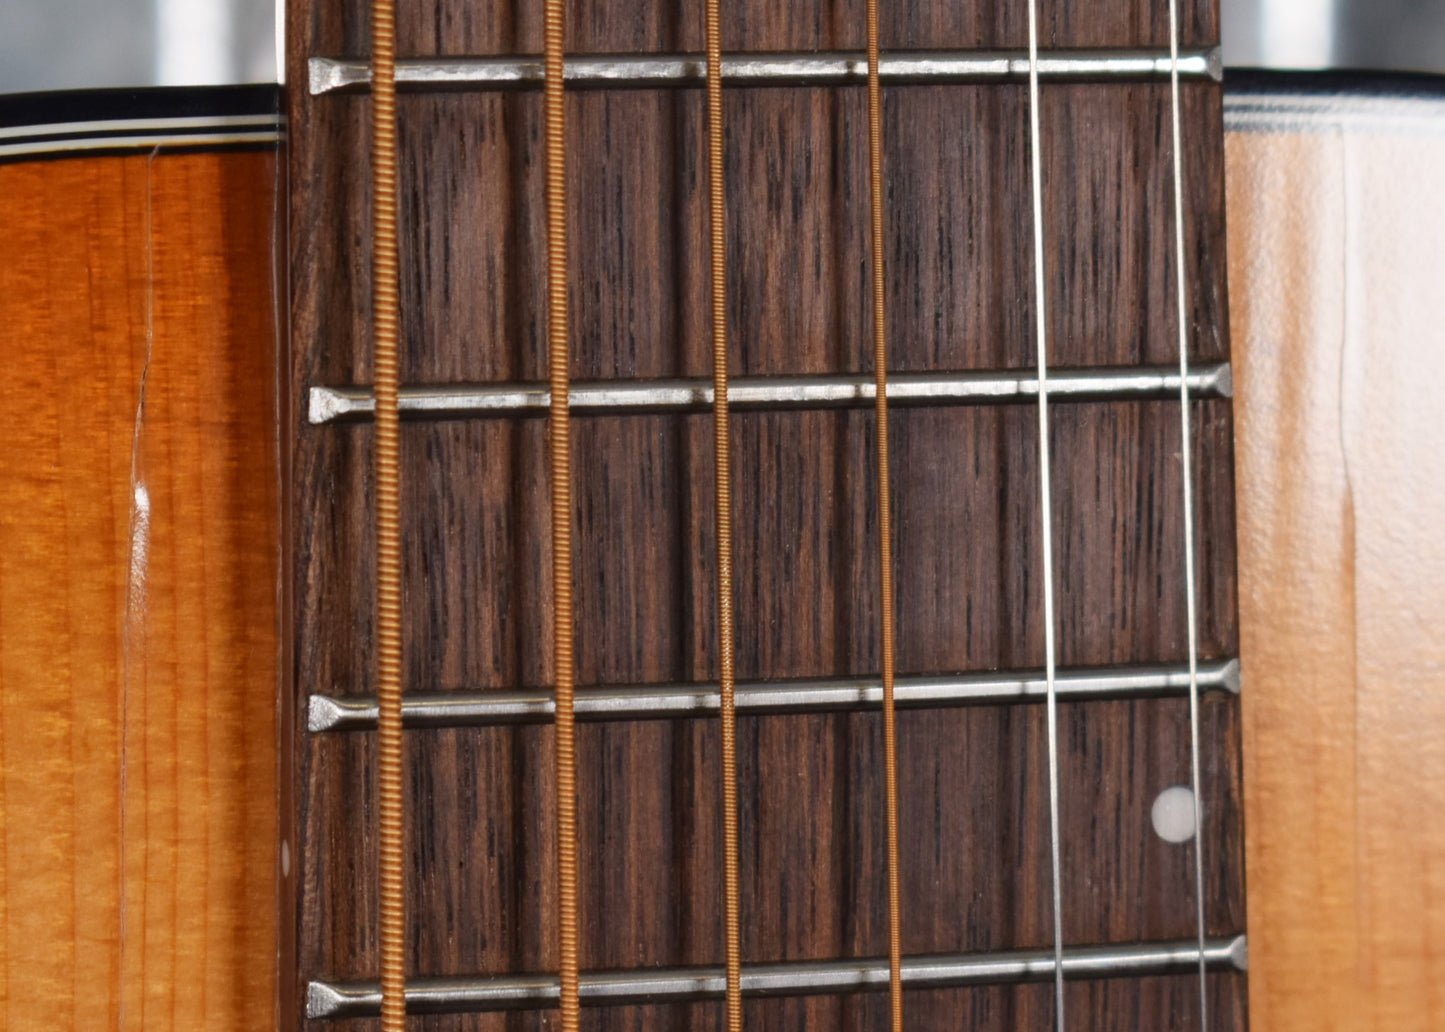 Breedlove Signature Concertina Copper E Mahogany Acoustic Electric Guitar B Stock #2829